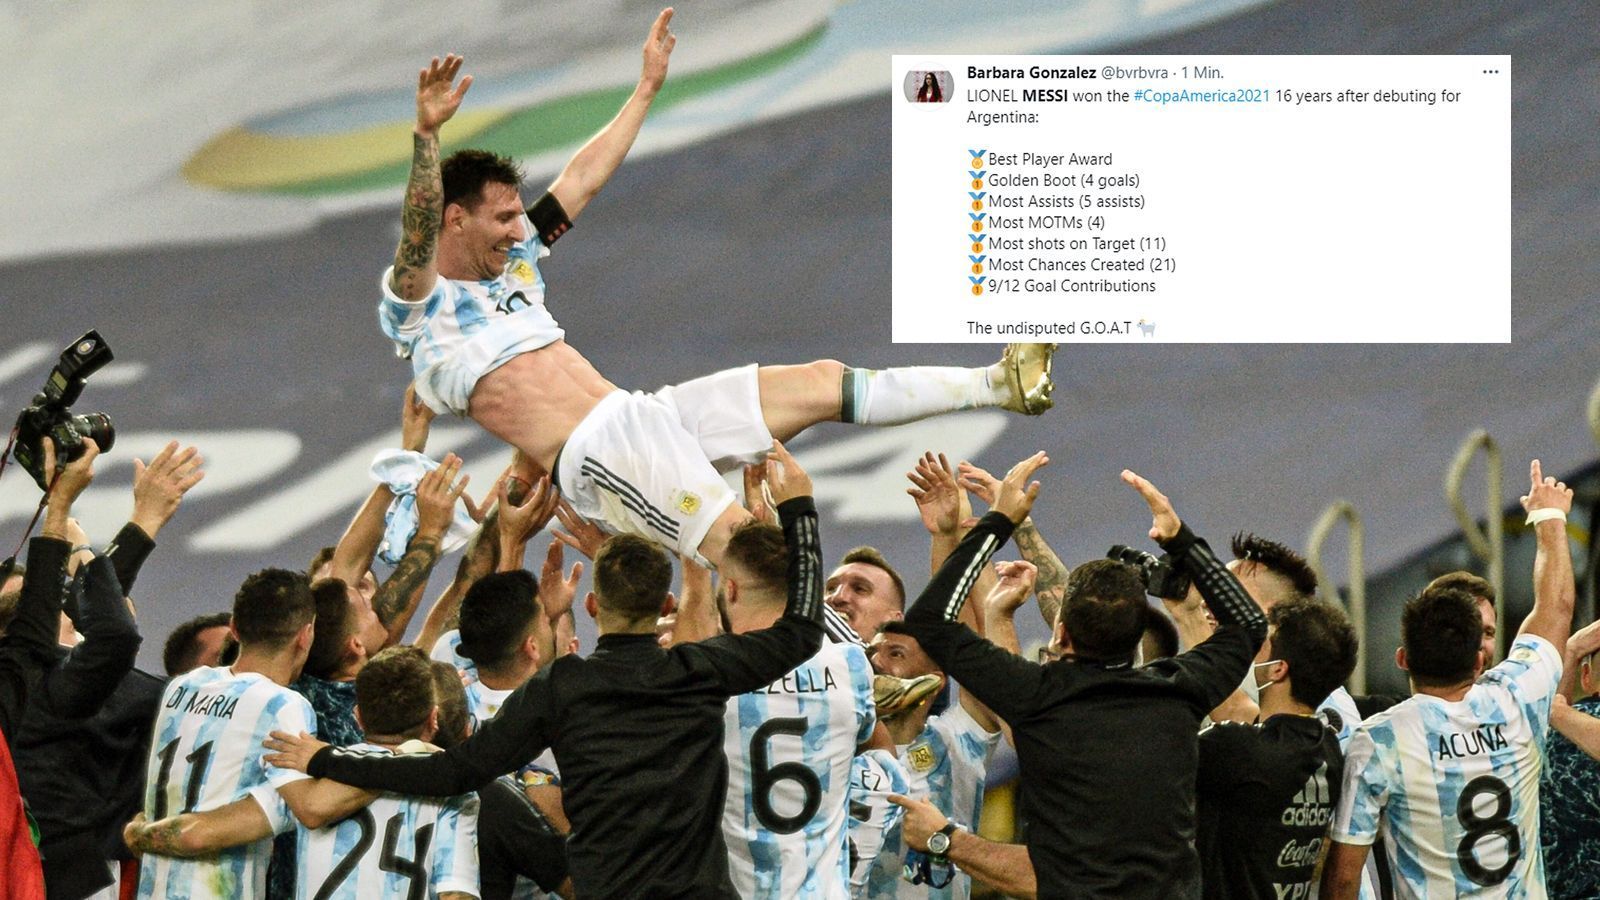 
                <strong>16 Jahre bis zum großen Triumph</strong><br>
                Für Messi bestand die bisherige Karriere in der argentinischen Nationalmannschaft vorwiegend aus großen Enttäuschungen, etwa das verlorene WM-Finale 2018 gegen Deutschland. Nun aber hat Messi, gut 16 Jahre nach seinem Debüt für die "Albiceleste", mit der Copa America seinen großen Titel gewonnen. 
              